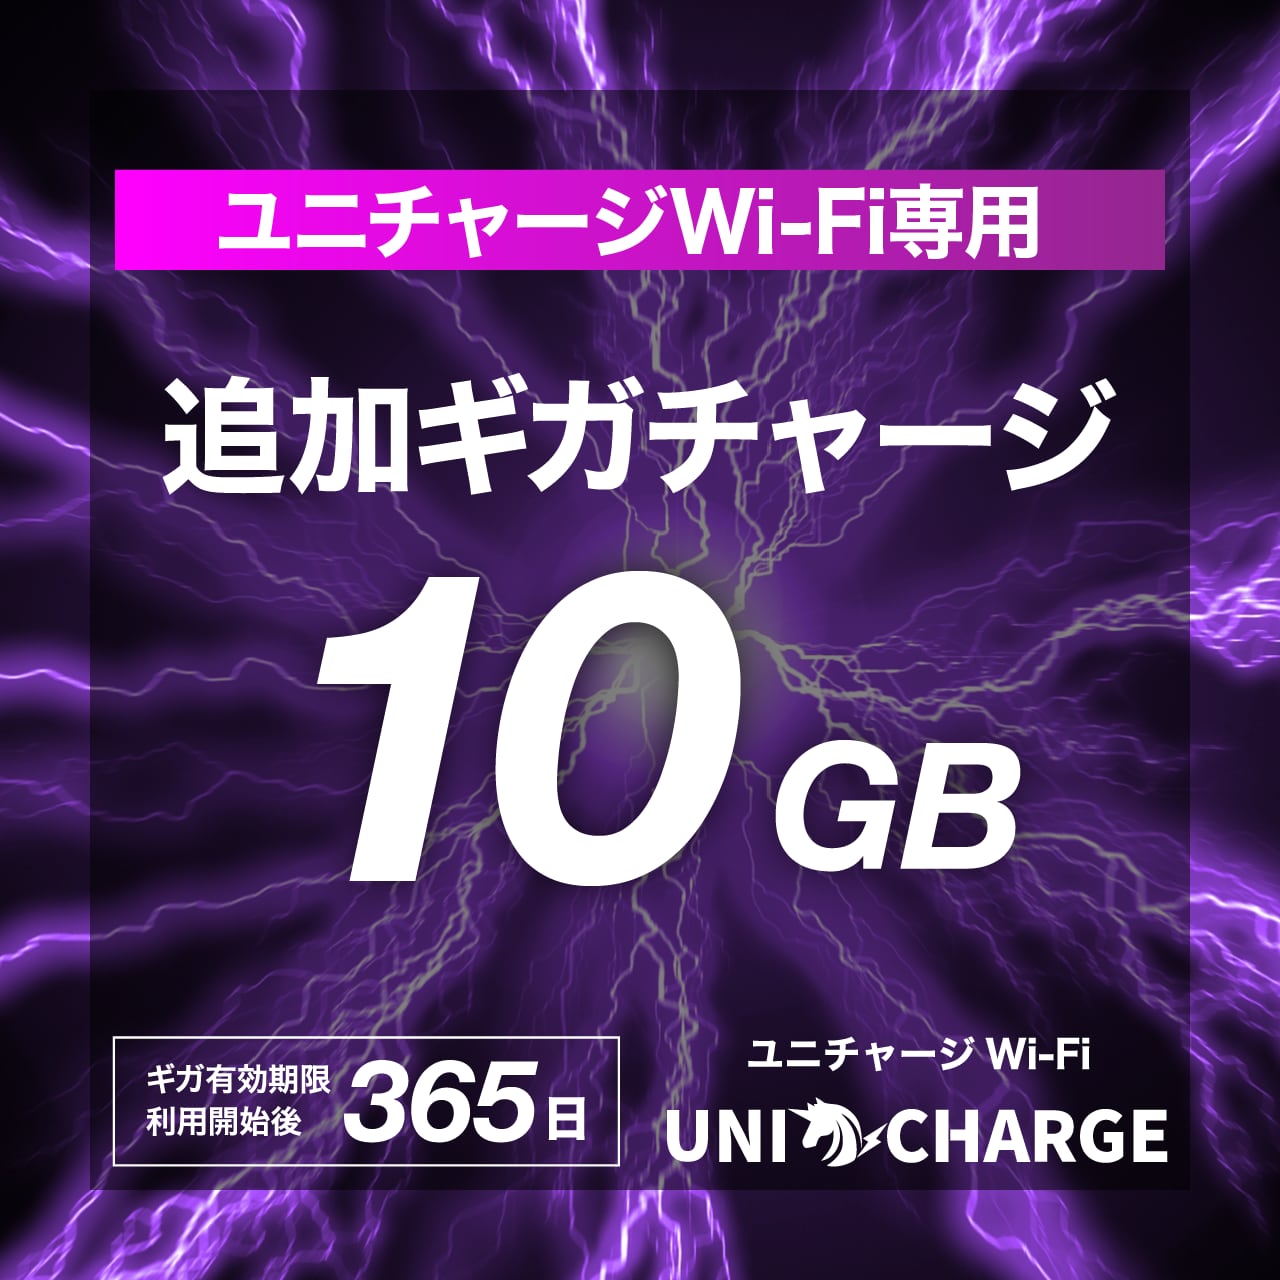 【ユニチャージWiFi専用・追加ギガチャージ】10GB | トリプルキャリア対応